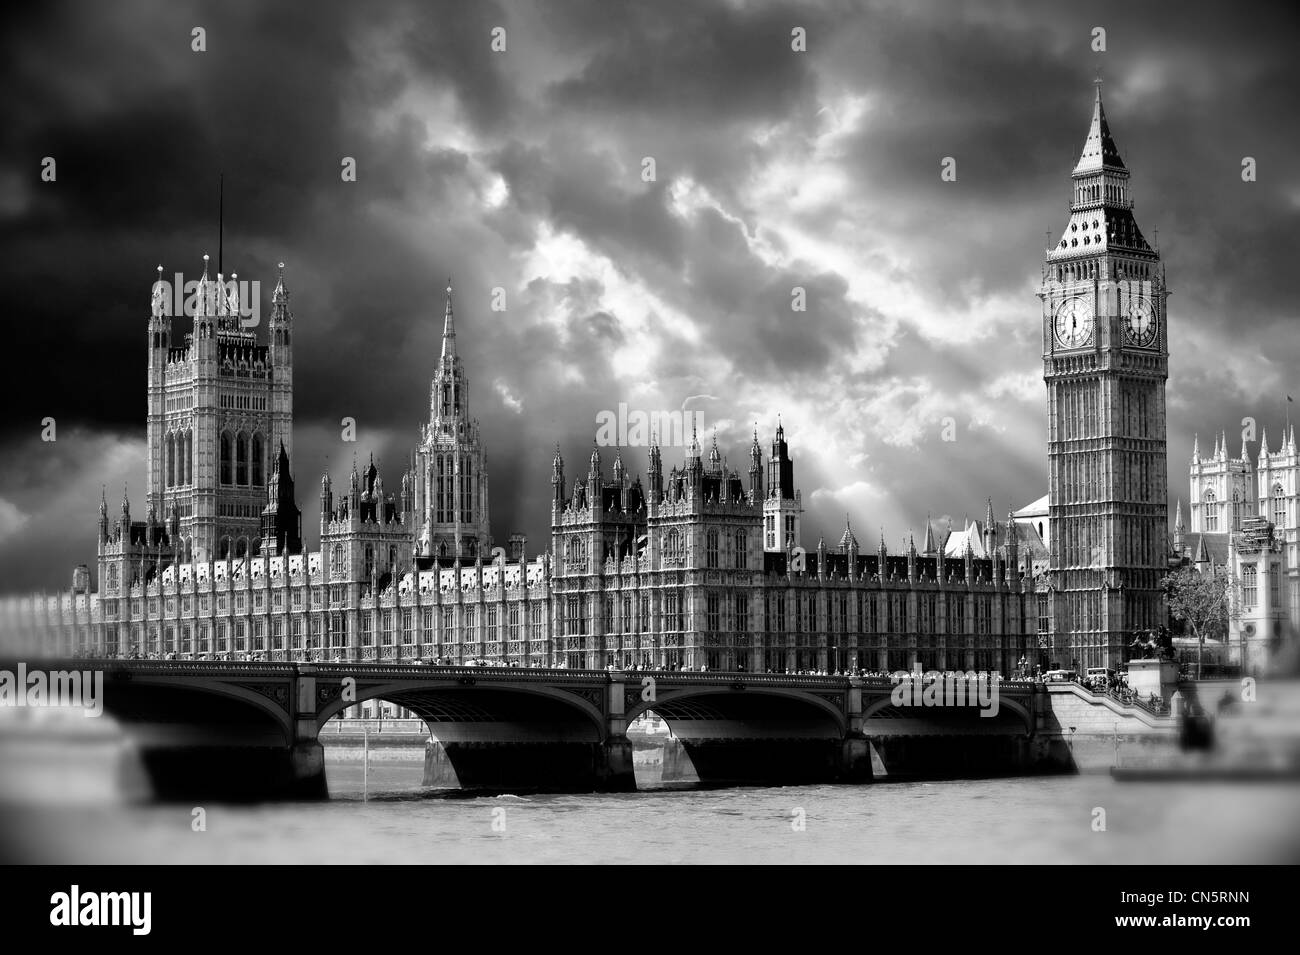 Big Ben et les chambres du Parlement, Westminster, Londres. Dramatique en noir et blanc photo Banque D'Images